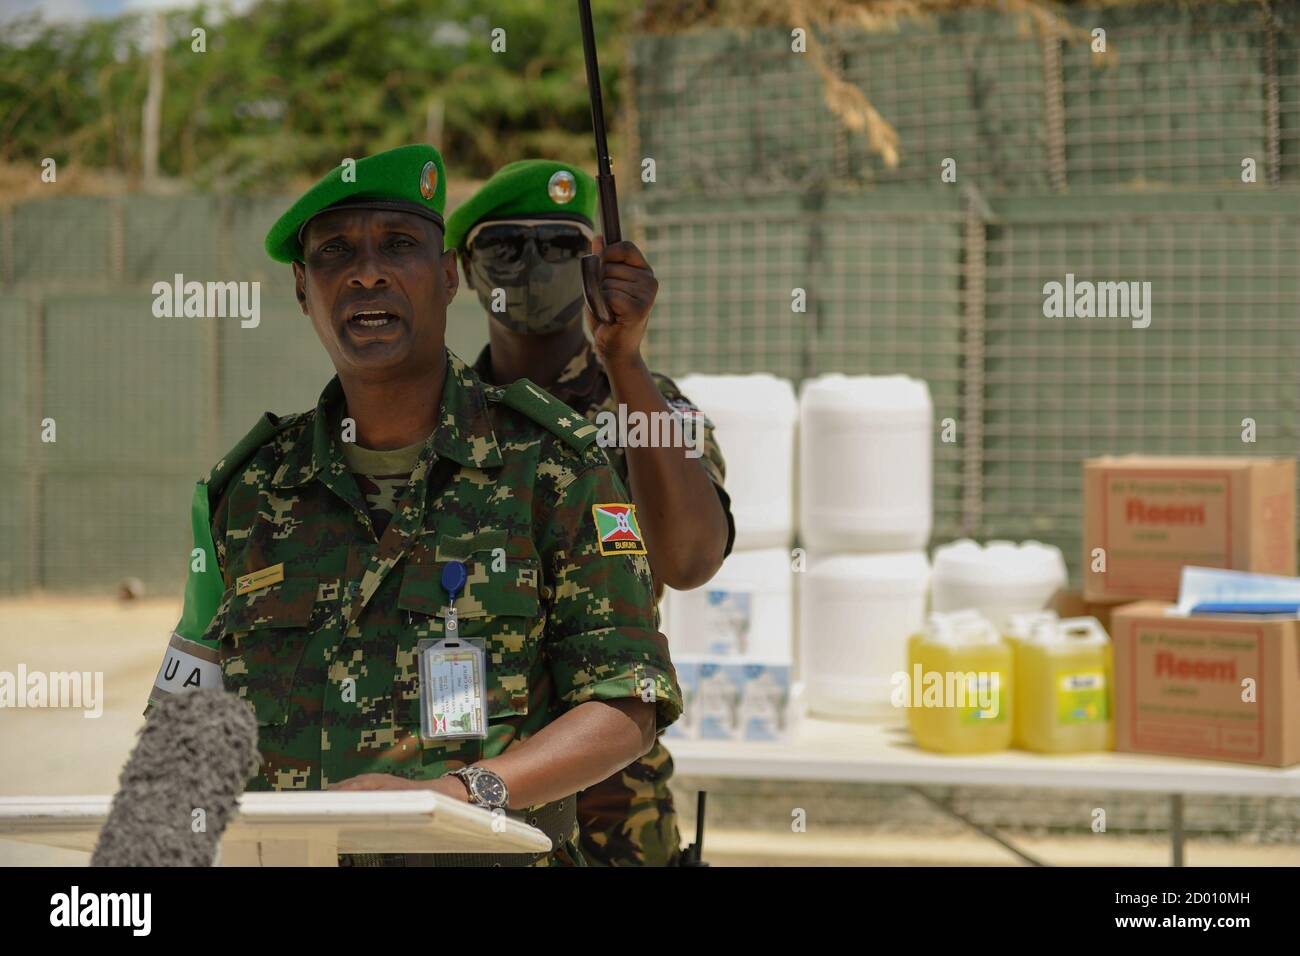 El Teniente Coronel Cyriaque Bikorimana, Oficial Jefe Militar Adjunto de Cooperación Civil-Militar (CIMIC) de la Misión de la Unión Africana en Somalia (AMISOM), habla en la ceremonia de entrega de artículos médicos y sanitarios donados por el Ejército de los Estados Unidos a la AMISOM. Los artículos, destinados a beneficiar a las personas desplazadas en el interior del país (PDI) en la zona de responsabilidad de la AMISOM, se entregaron en Mogadishu, Somalia, el 8 de septiembre de 2020. Foto de stock